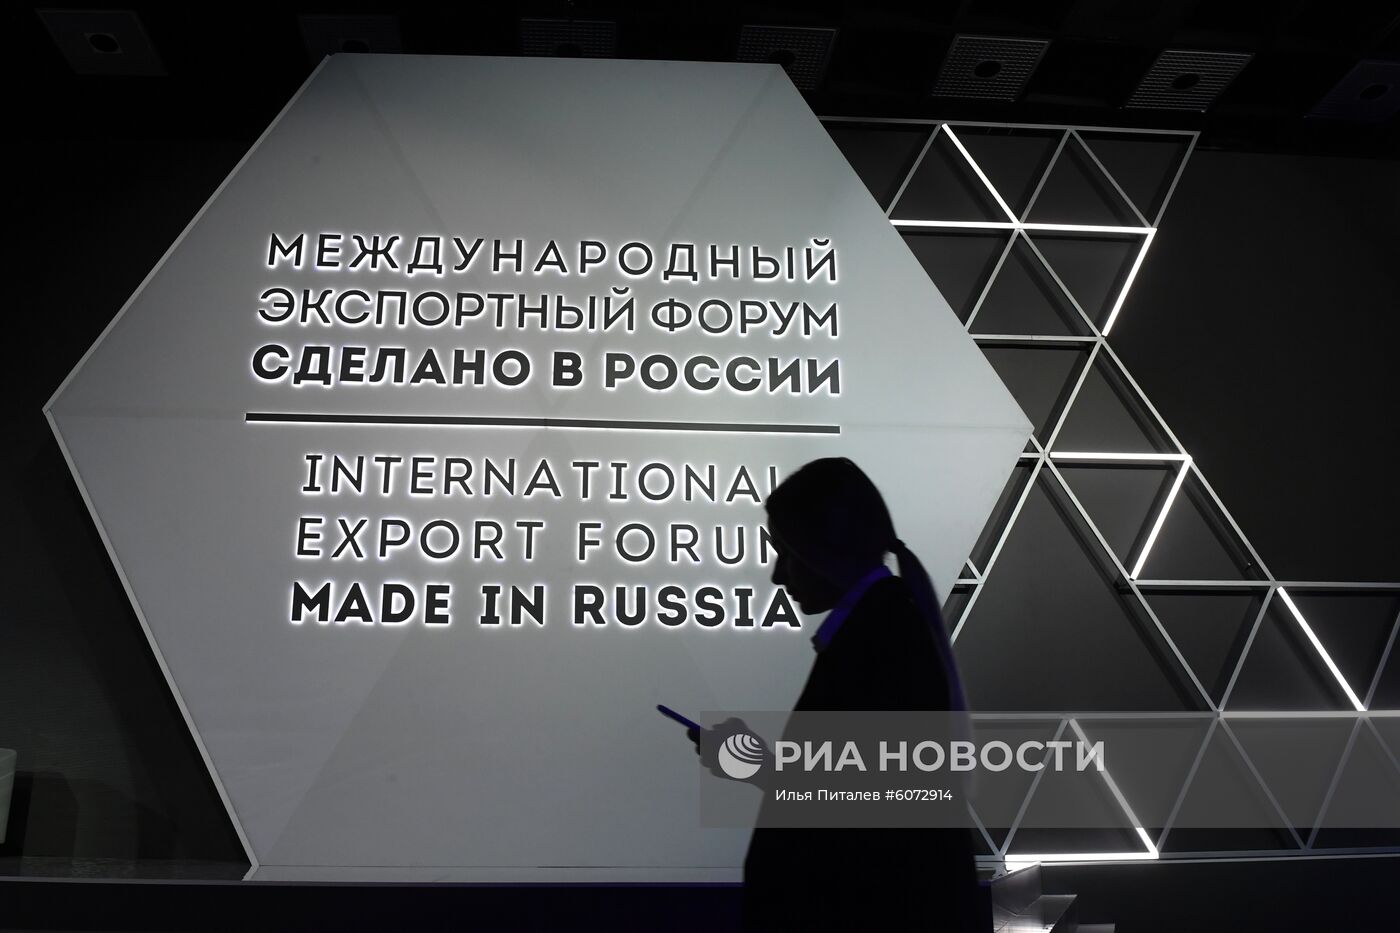 Международный форум "Сделано в России" 